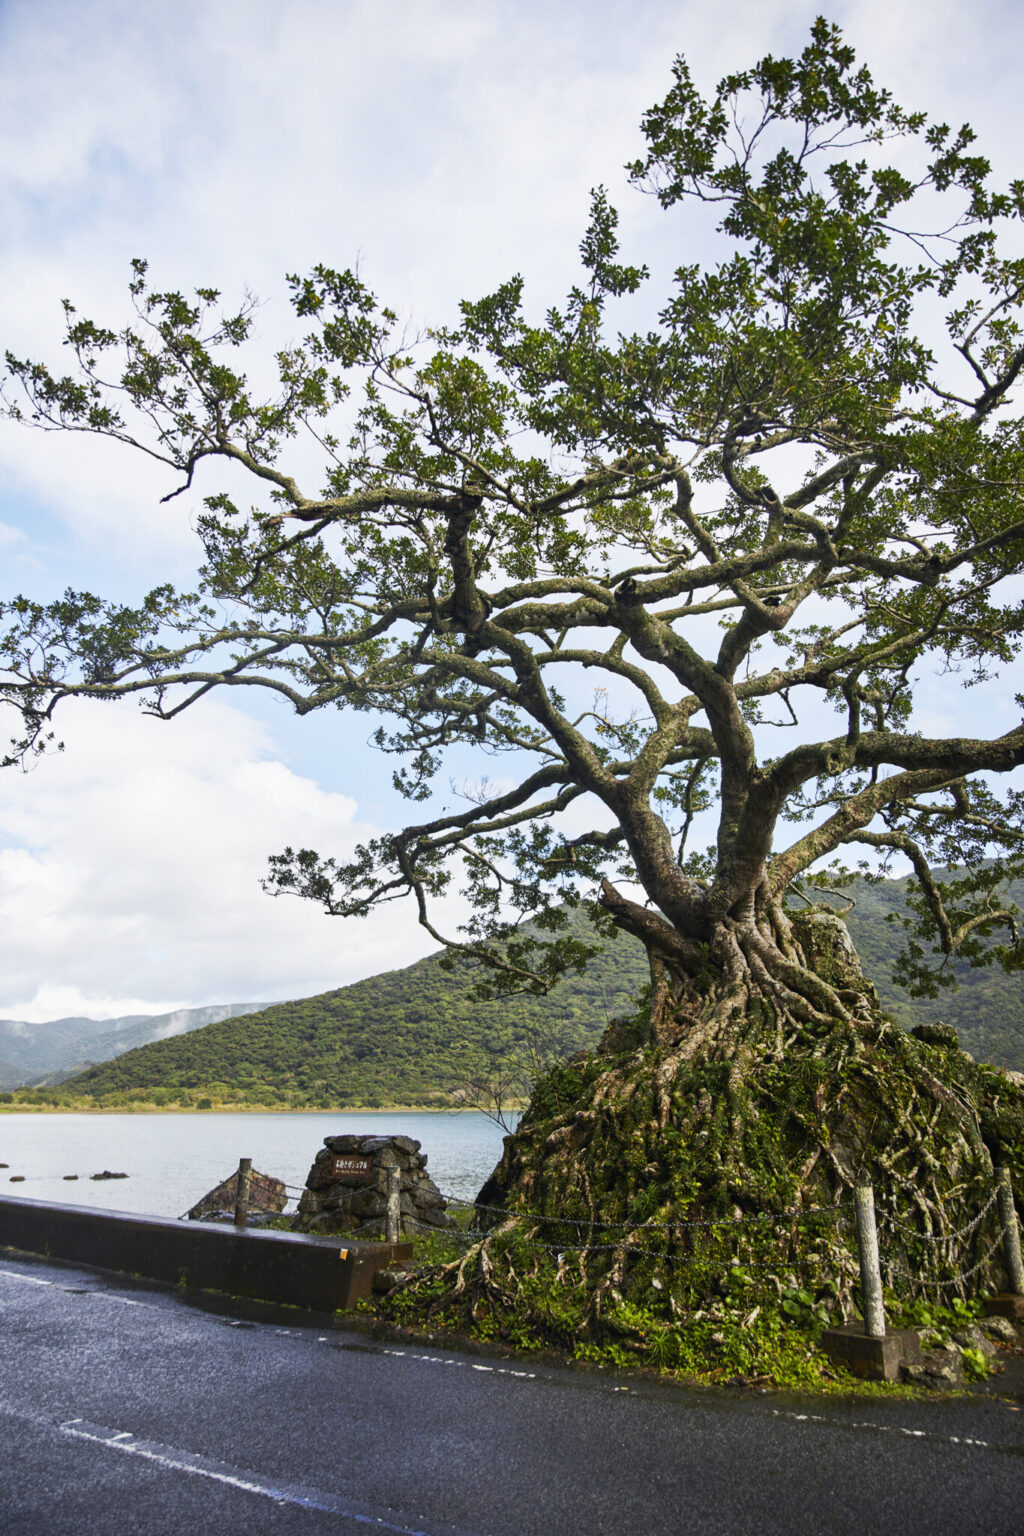 住用湾沿いにある石抱きガジュマル。珍しい樹形で県の天然記念物に指定されている。